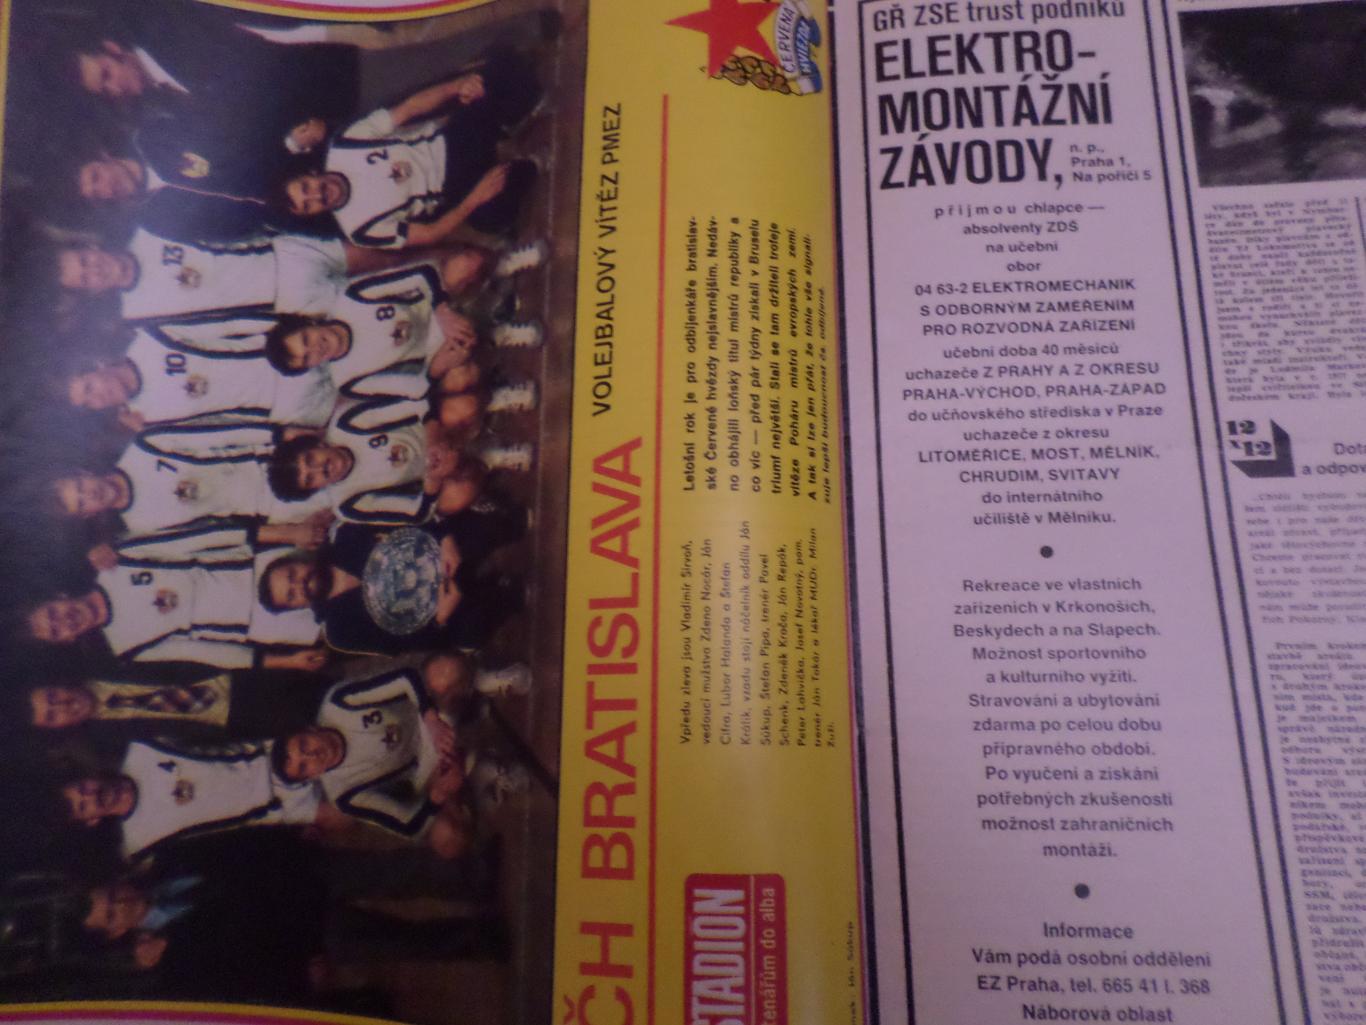 журнал Стадион Чехословакия № 16 1979 г постер ВК Братислава волейбол 1